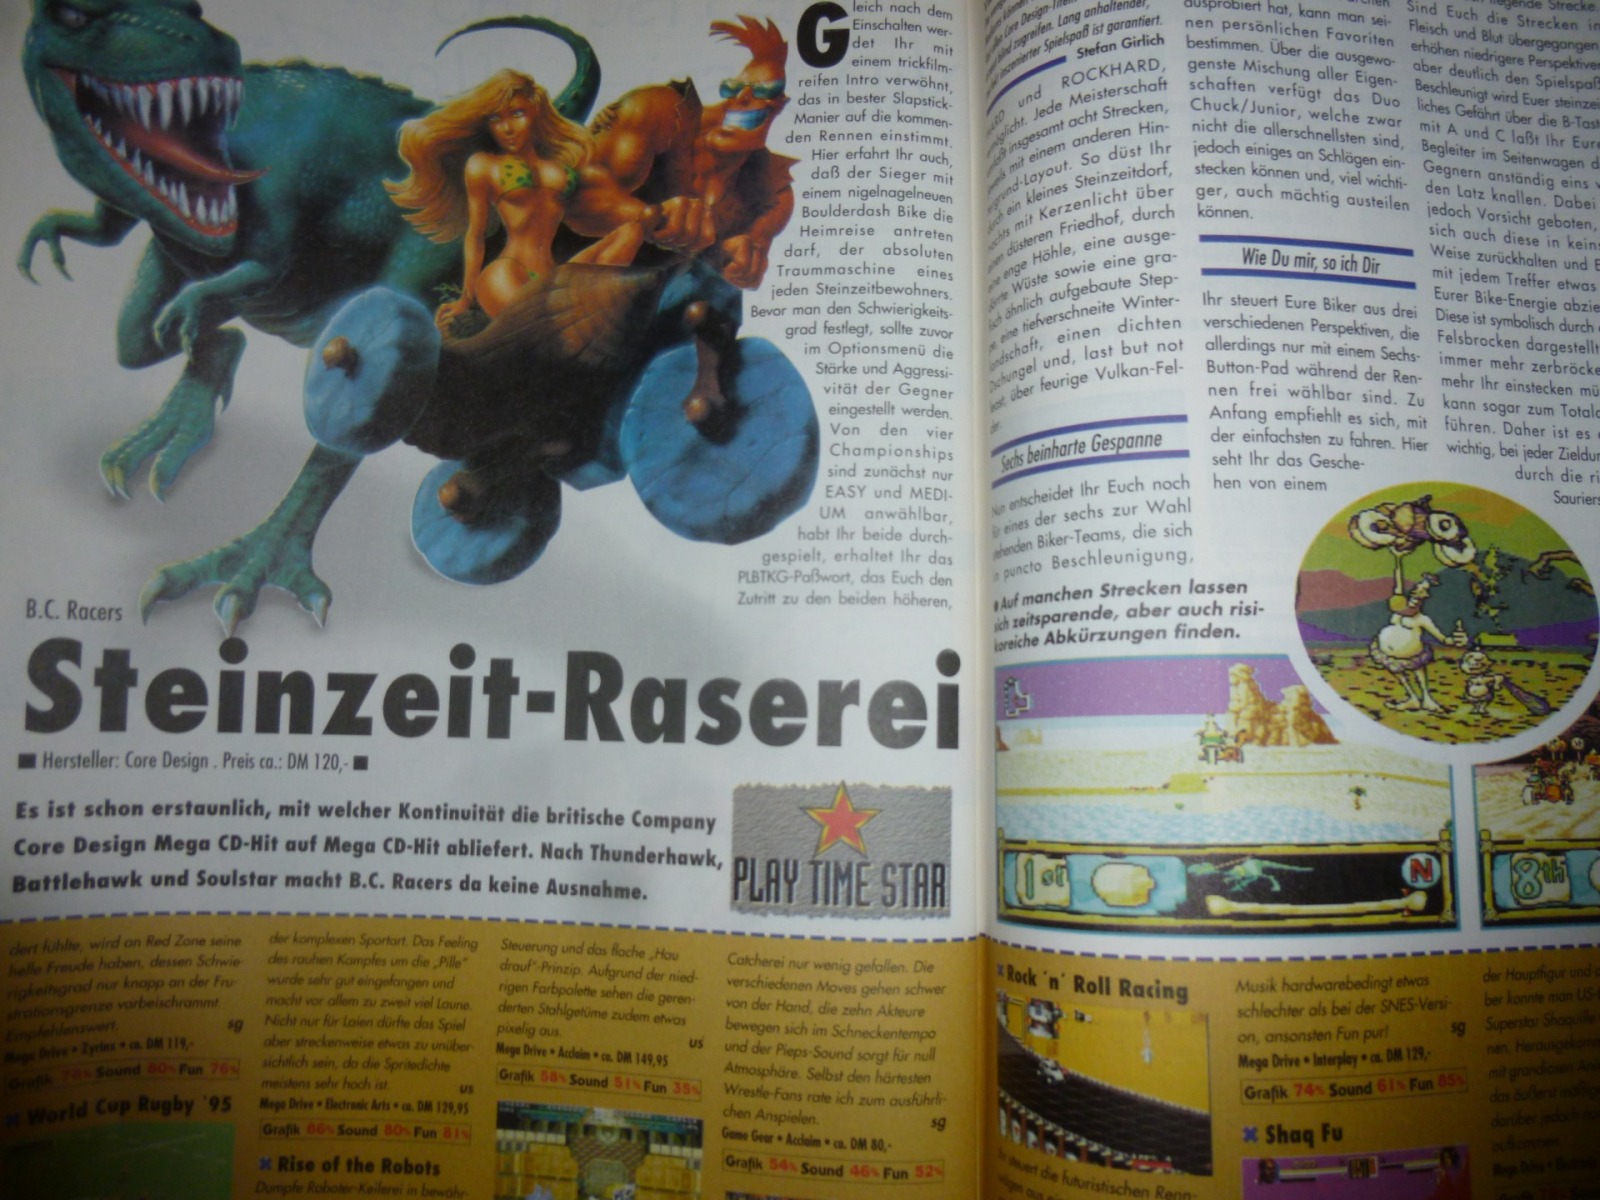 Play Time - Das Computer- und Videospiele-Magazin - Ausgabe 2/95 1995 15